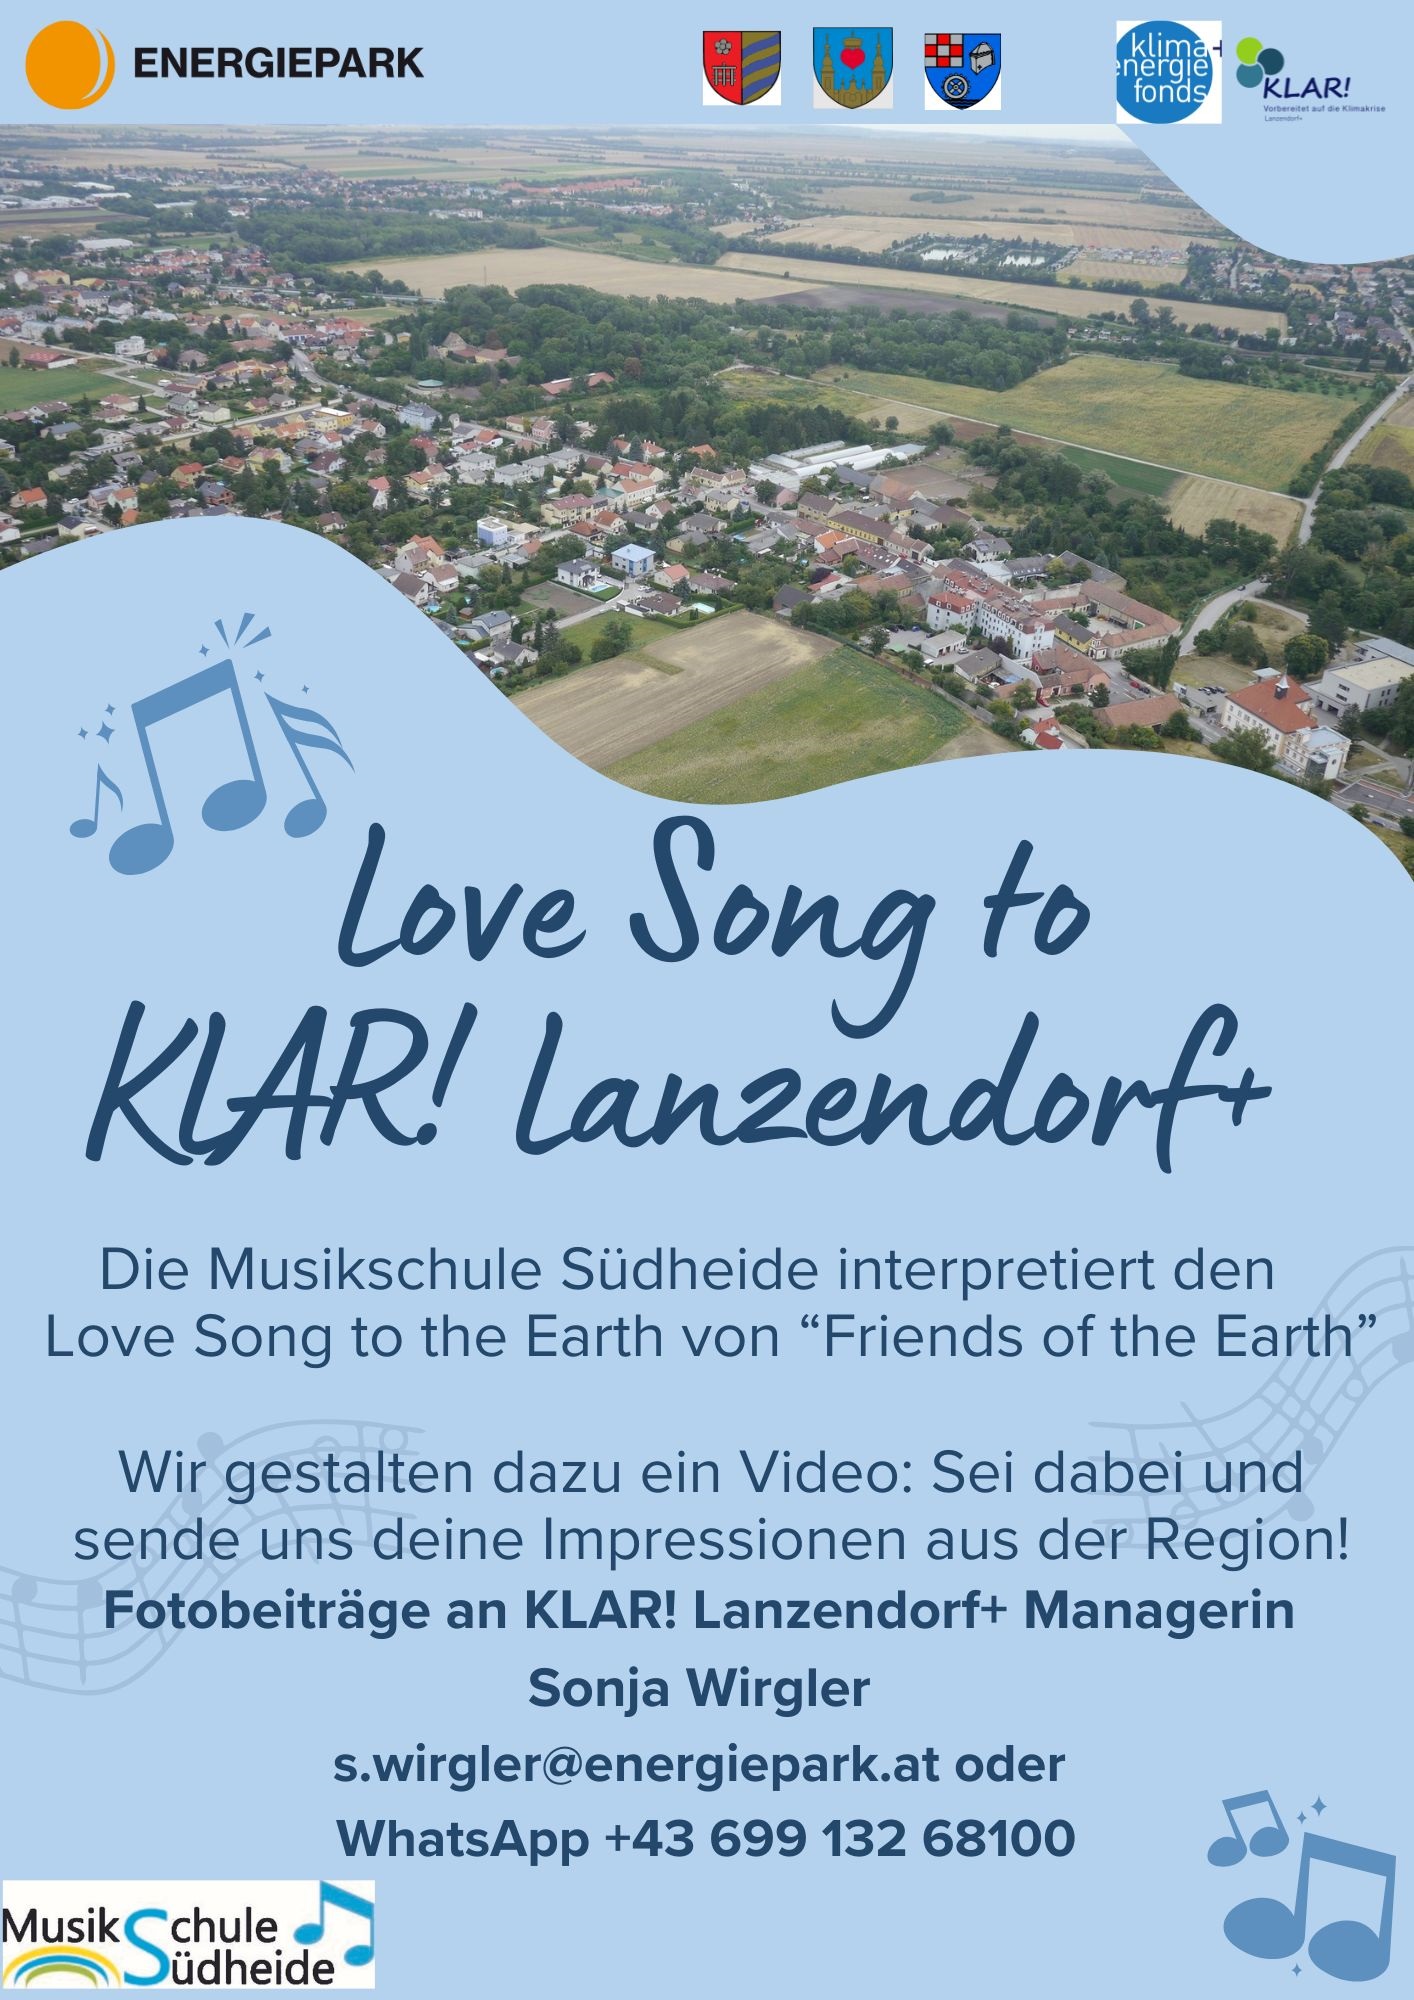 Love Song to KLAR! Lanzendorf+ - mach mit!